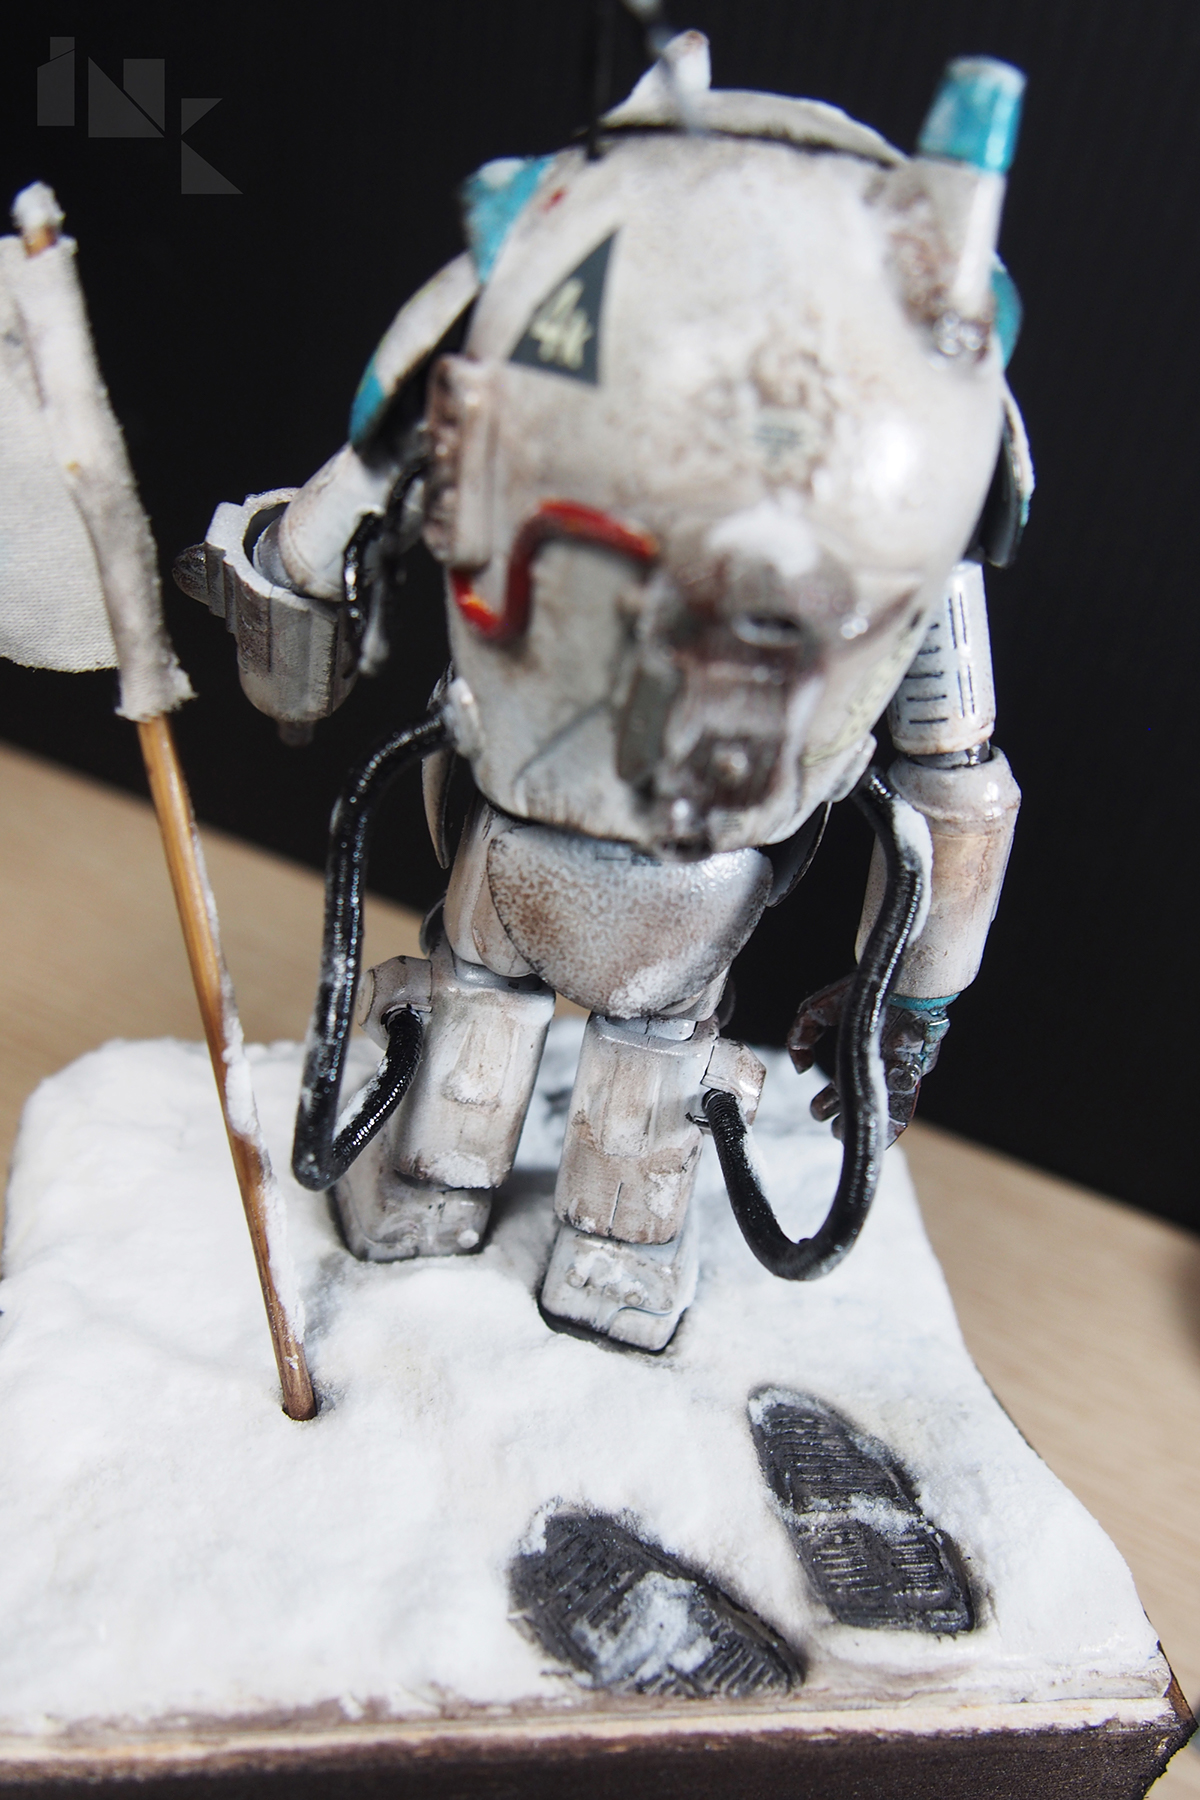 snowman Maschinen Krieger toy figure model kit chrismas